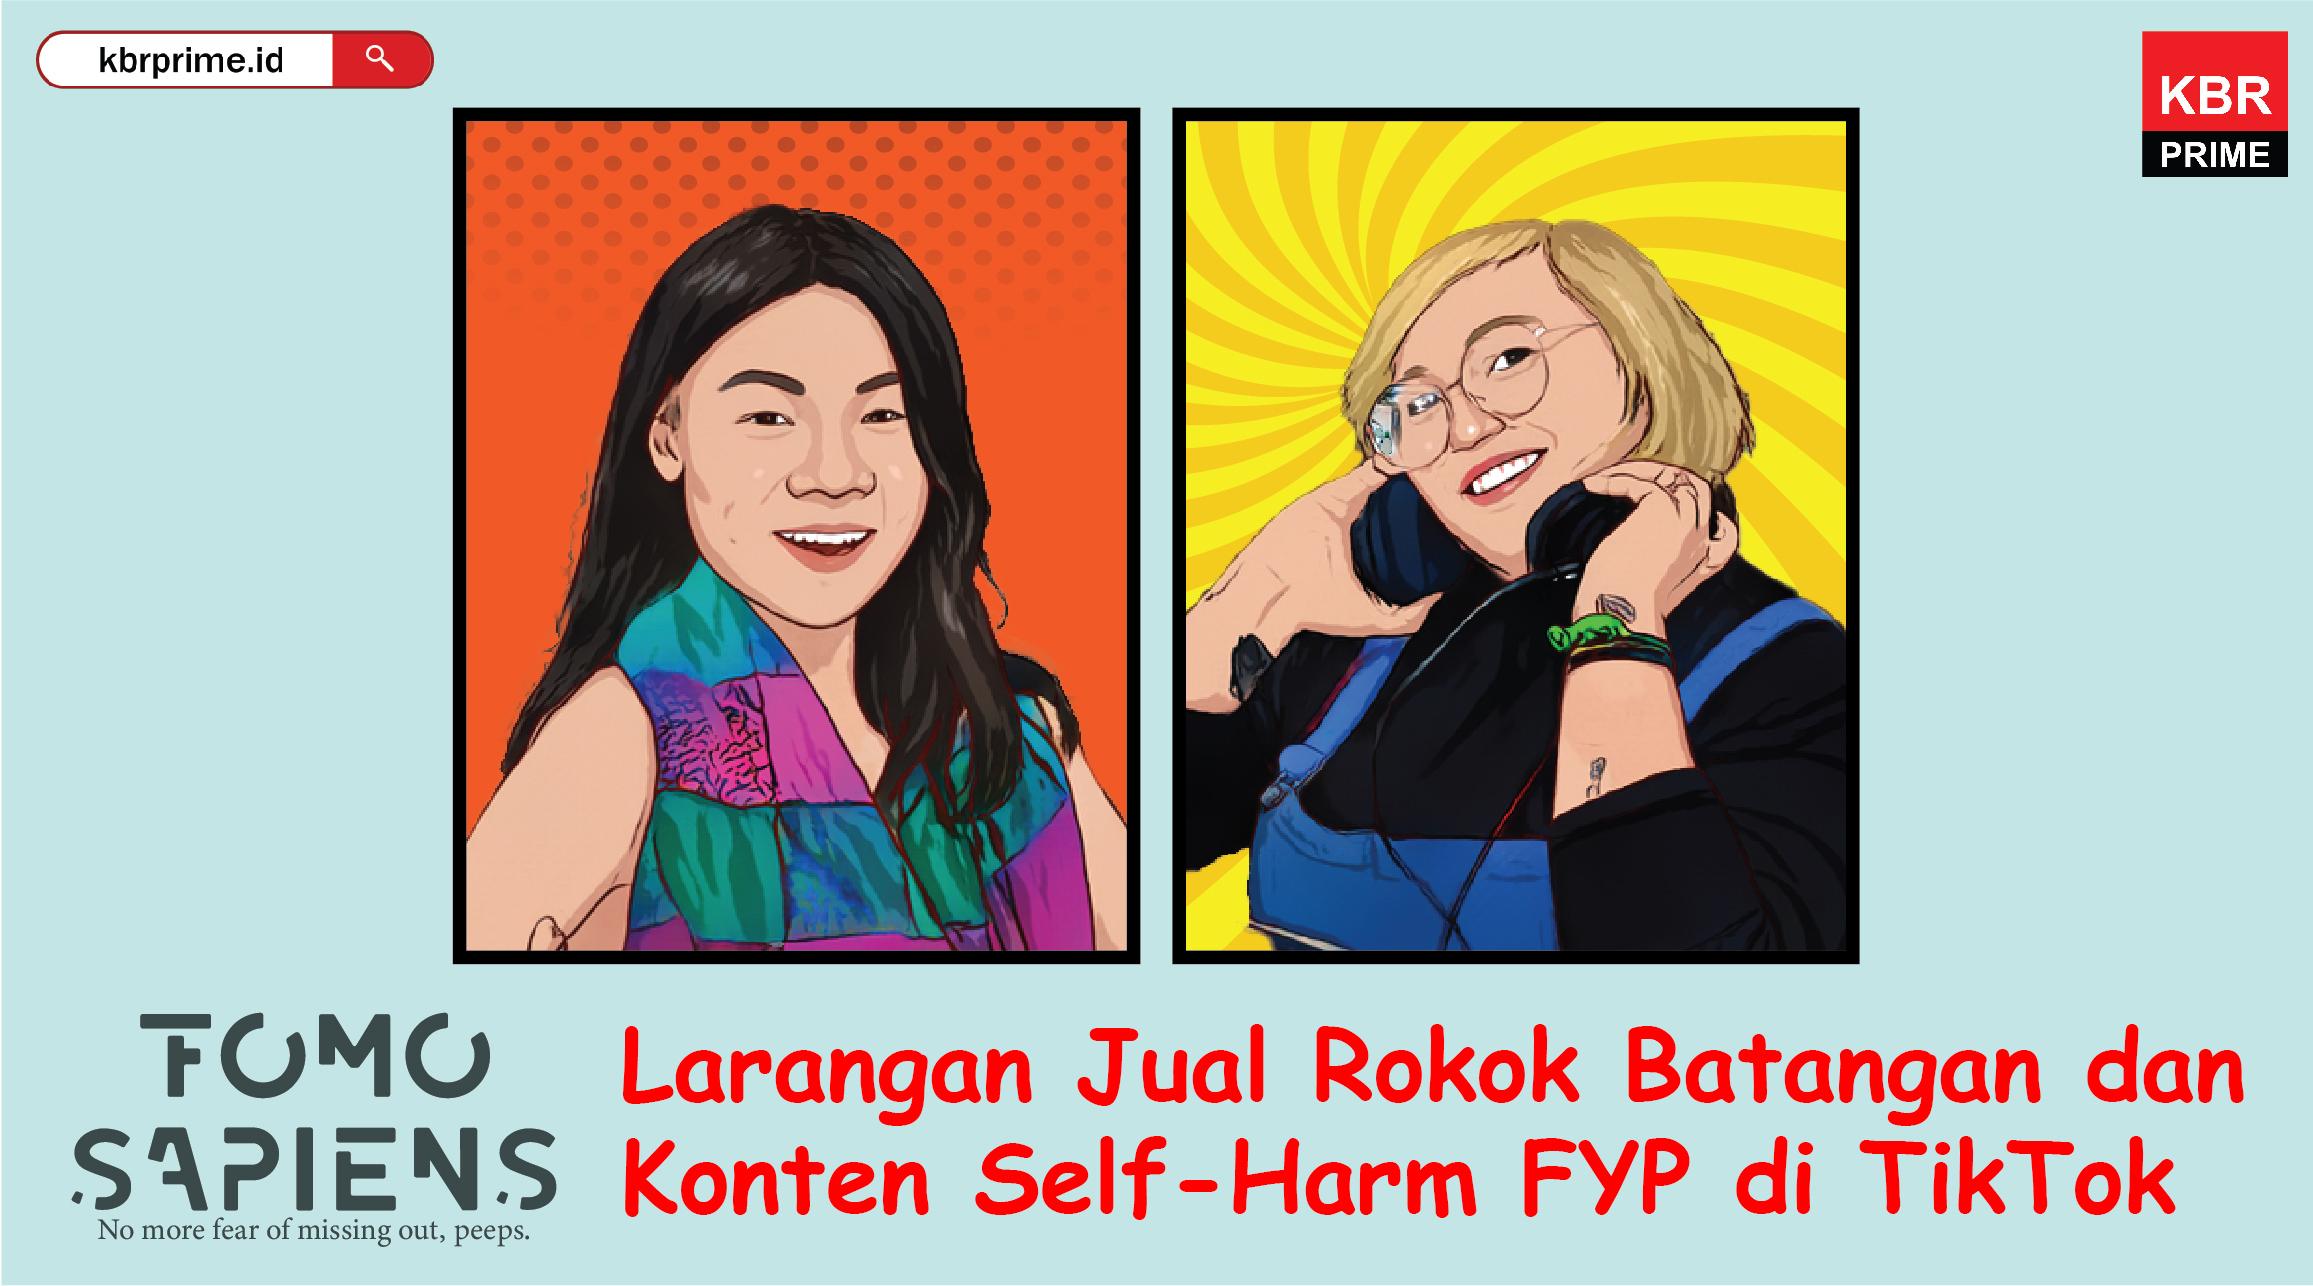 FOMO Sapiens : Larangan Jual Rokok Batangan dan Konten Self-Harm FYP di TikTok